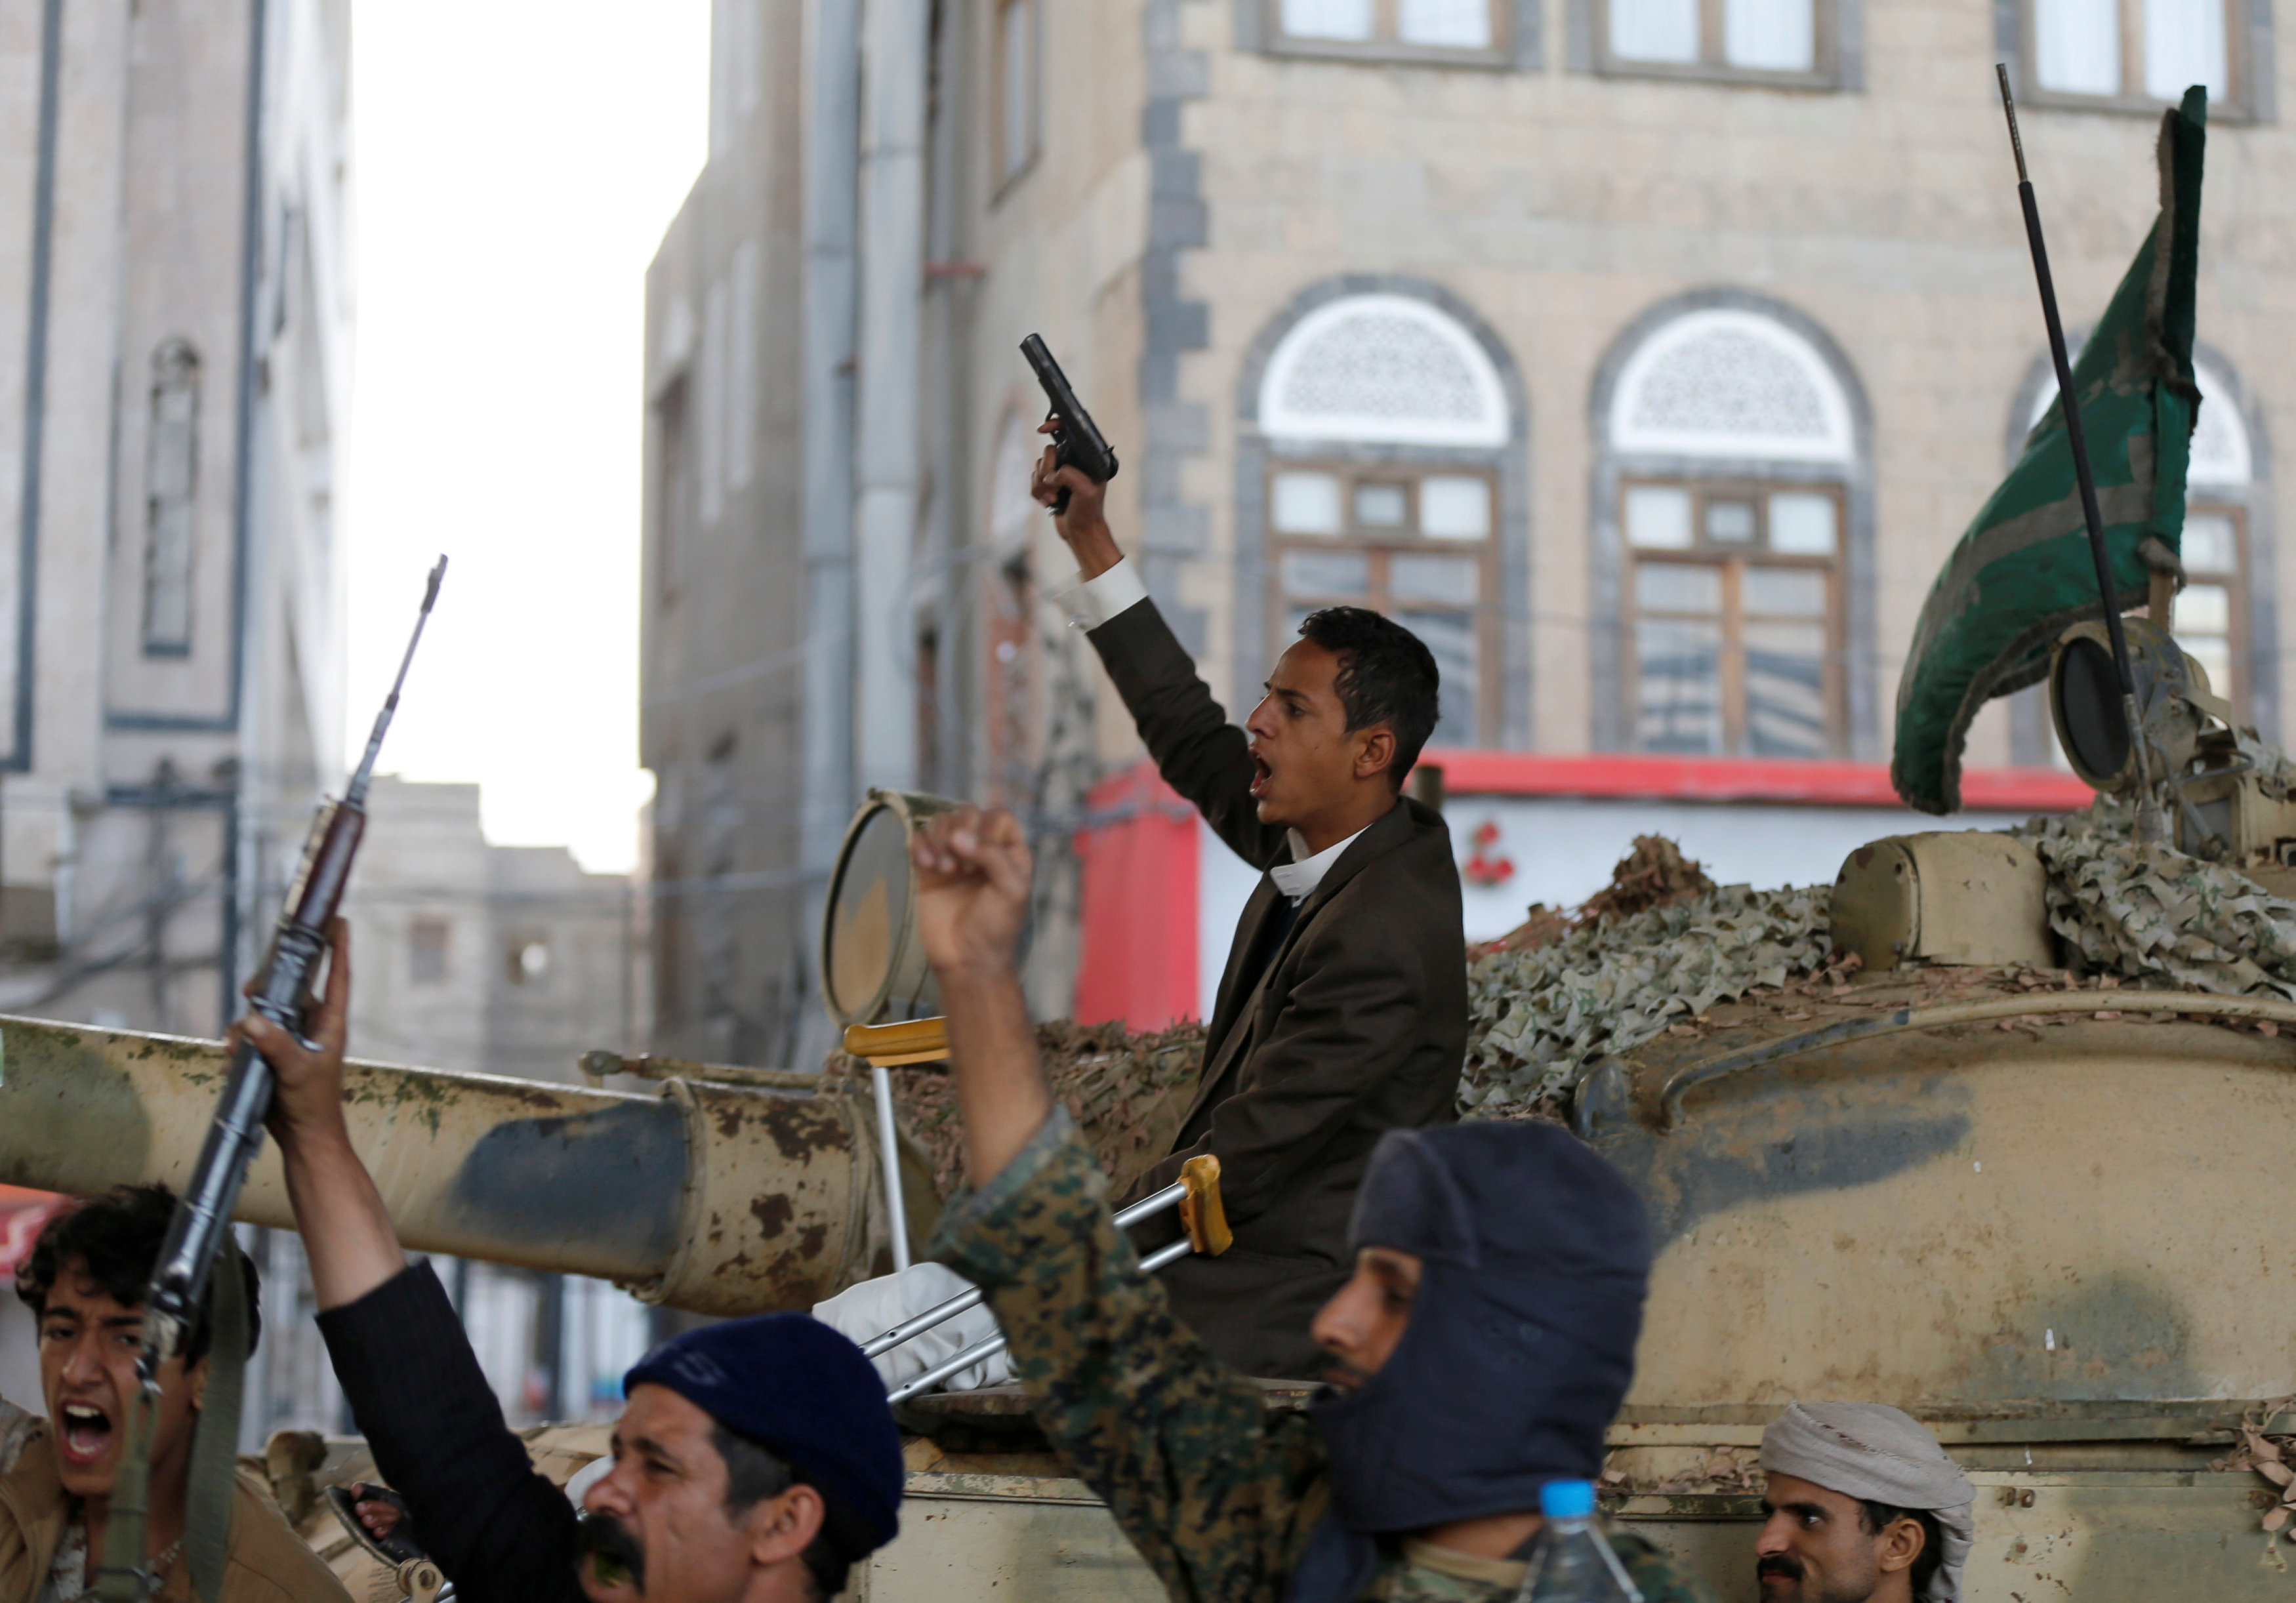 الحوثيين